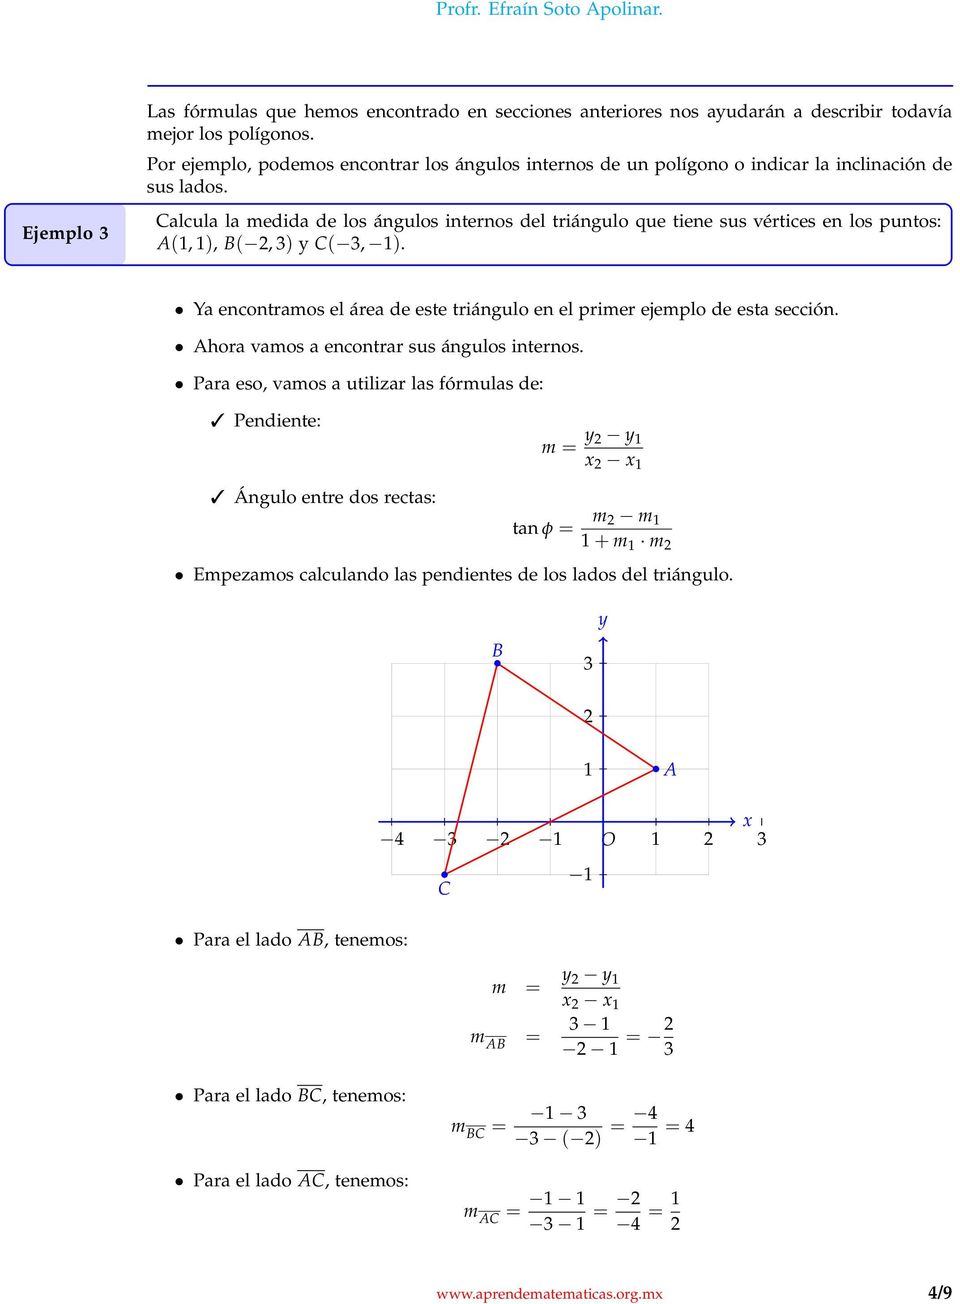 alcula la medida de los ángulos internos del triángulo que tiene sus vértices en los puntos: (, ), (, ) (, ).